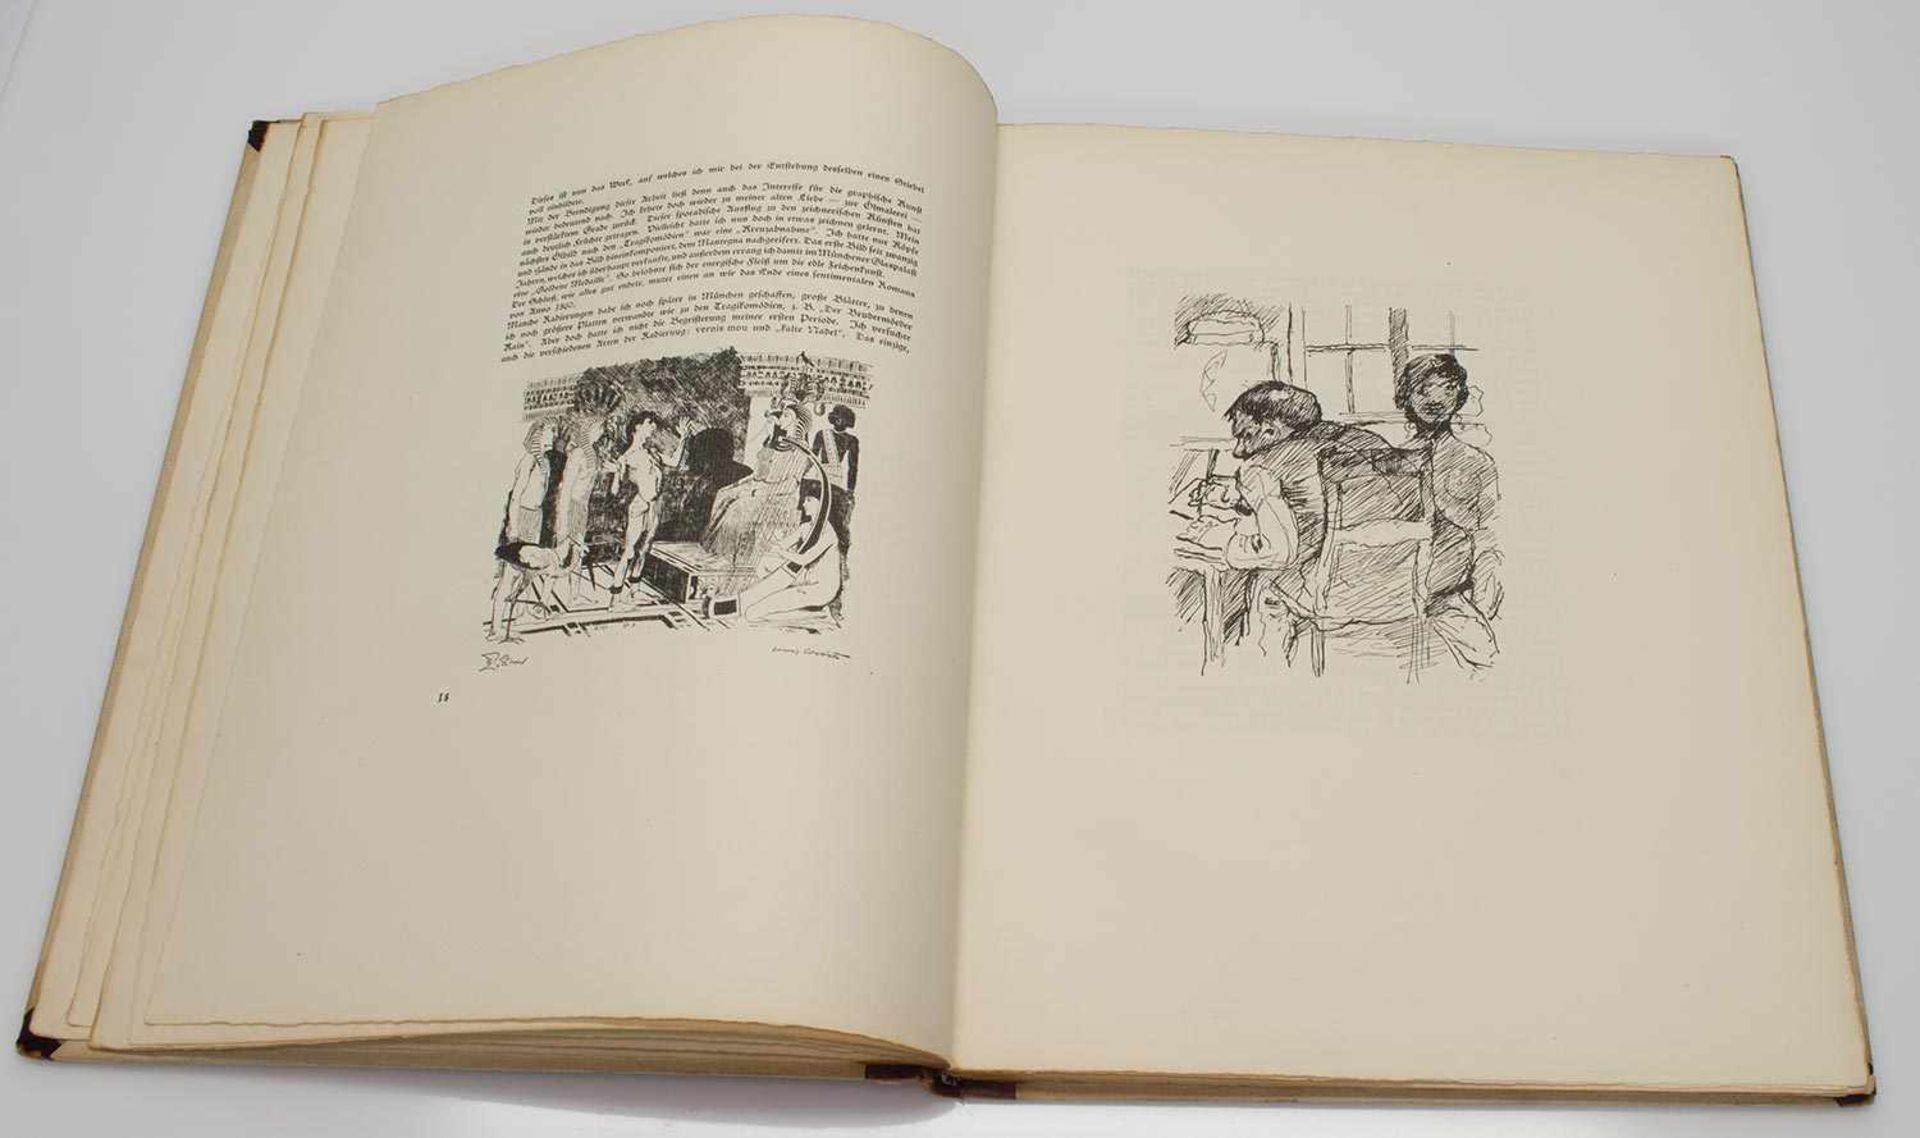 Lovis CorinthLovis Corinth - Gesammelte Schriften , Fritz Gurlitt Verlag/ Berlin 1920, handsignierte - Bild 3 aus 3